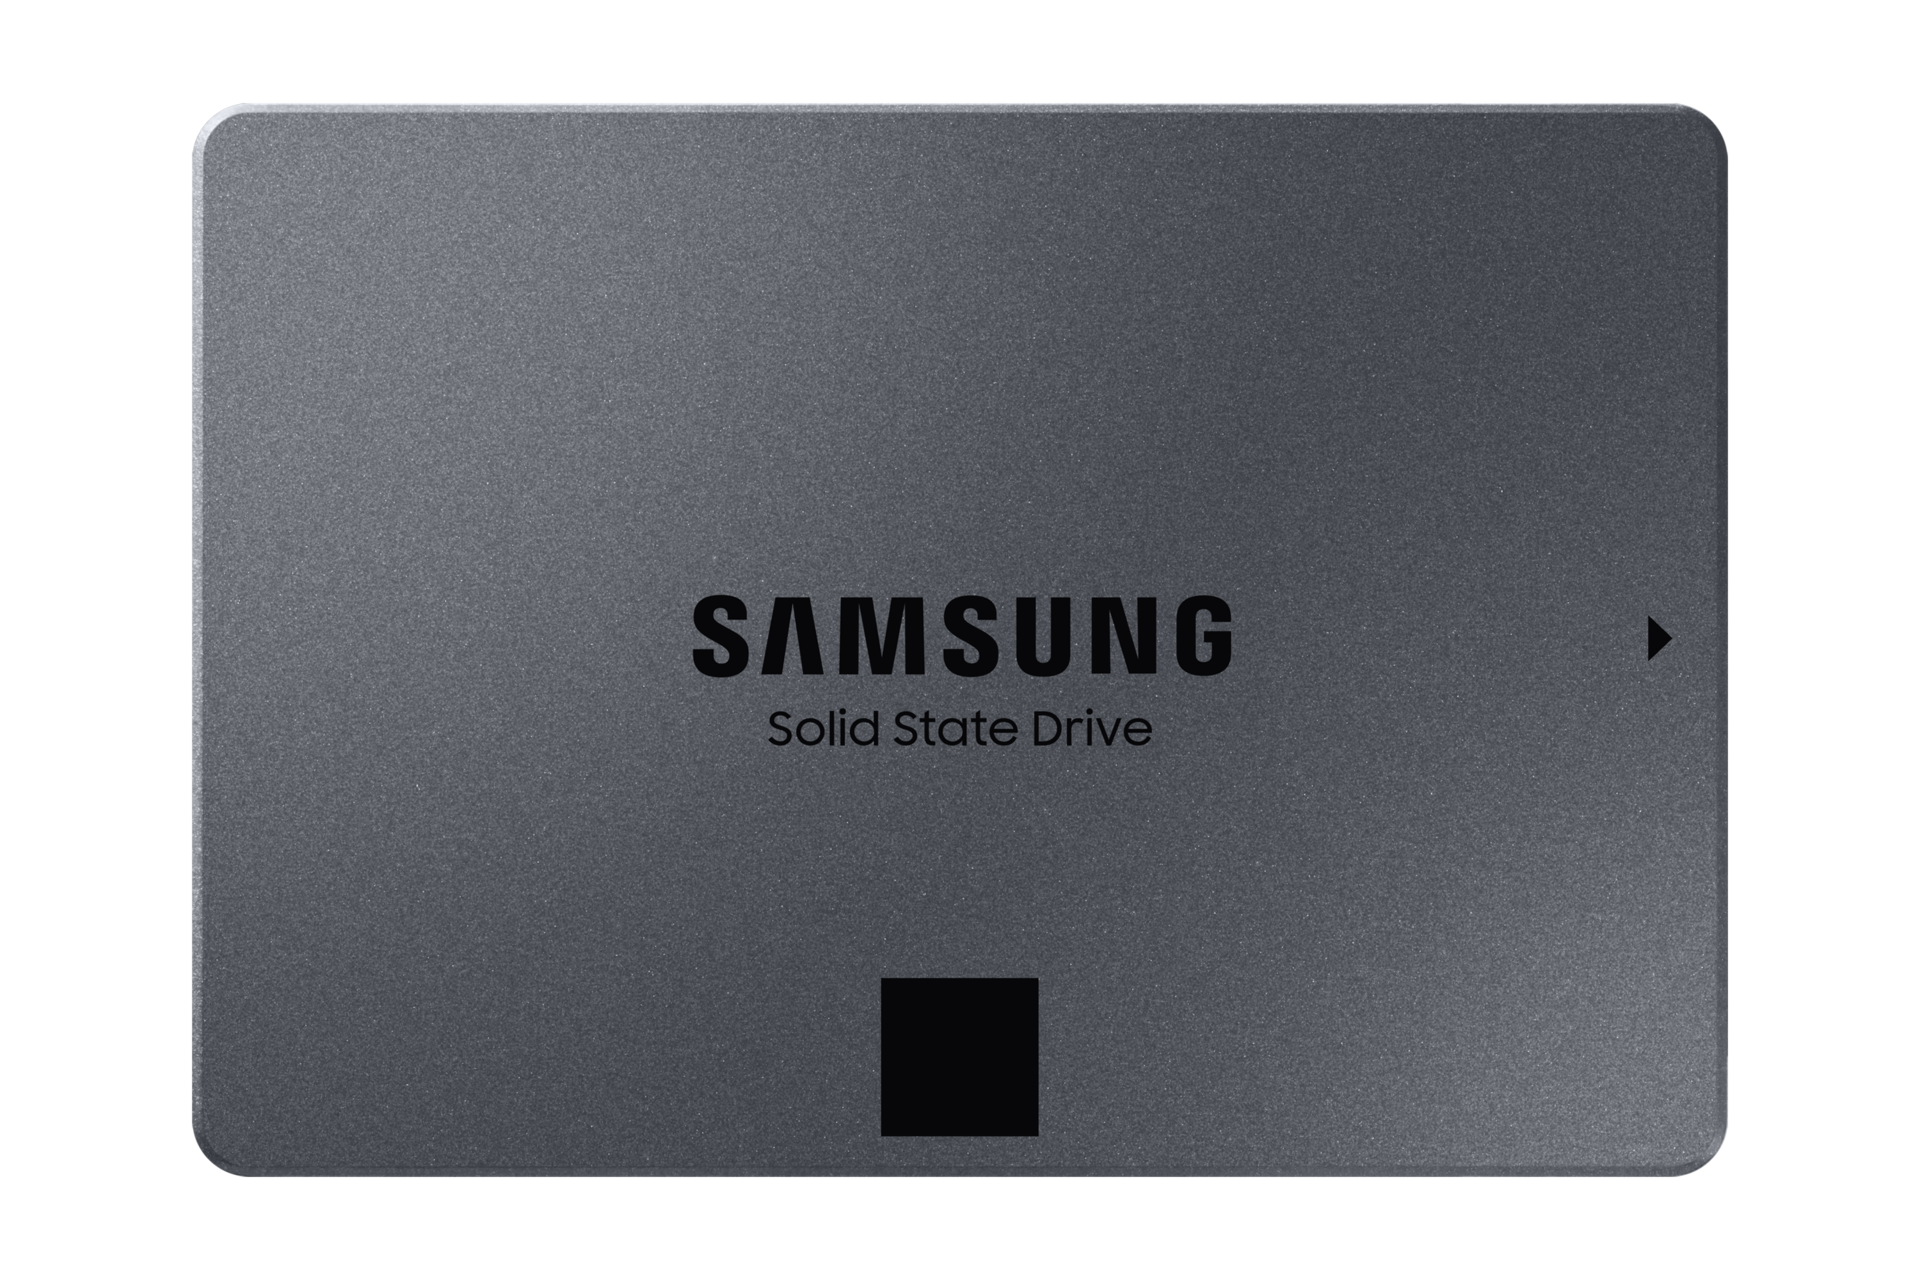 Zdjęcie od frontu obudowy przedstawionego niedawno dysku SSD Samsung, modelu 870 QVO o pojemności 4TB i z niespotykaną wydajnością